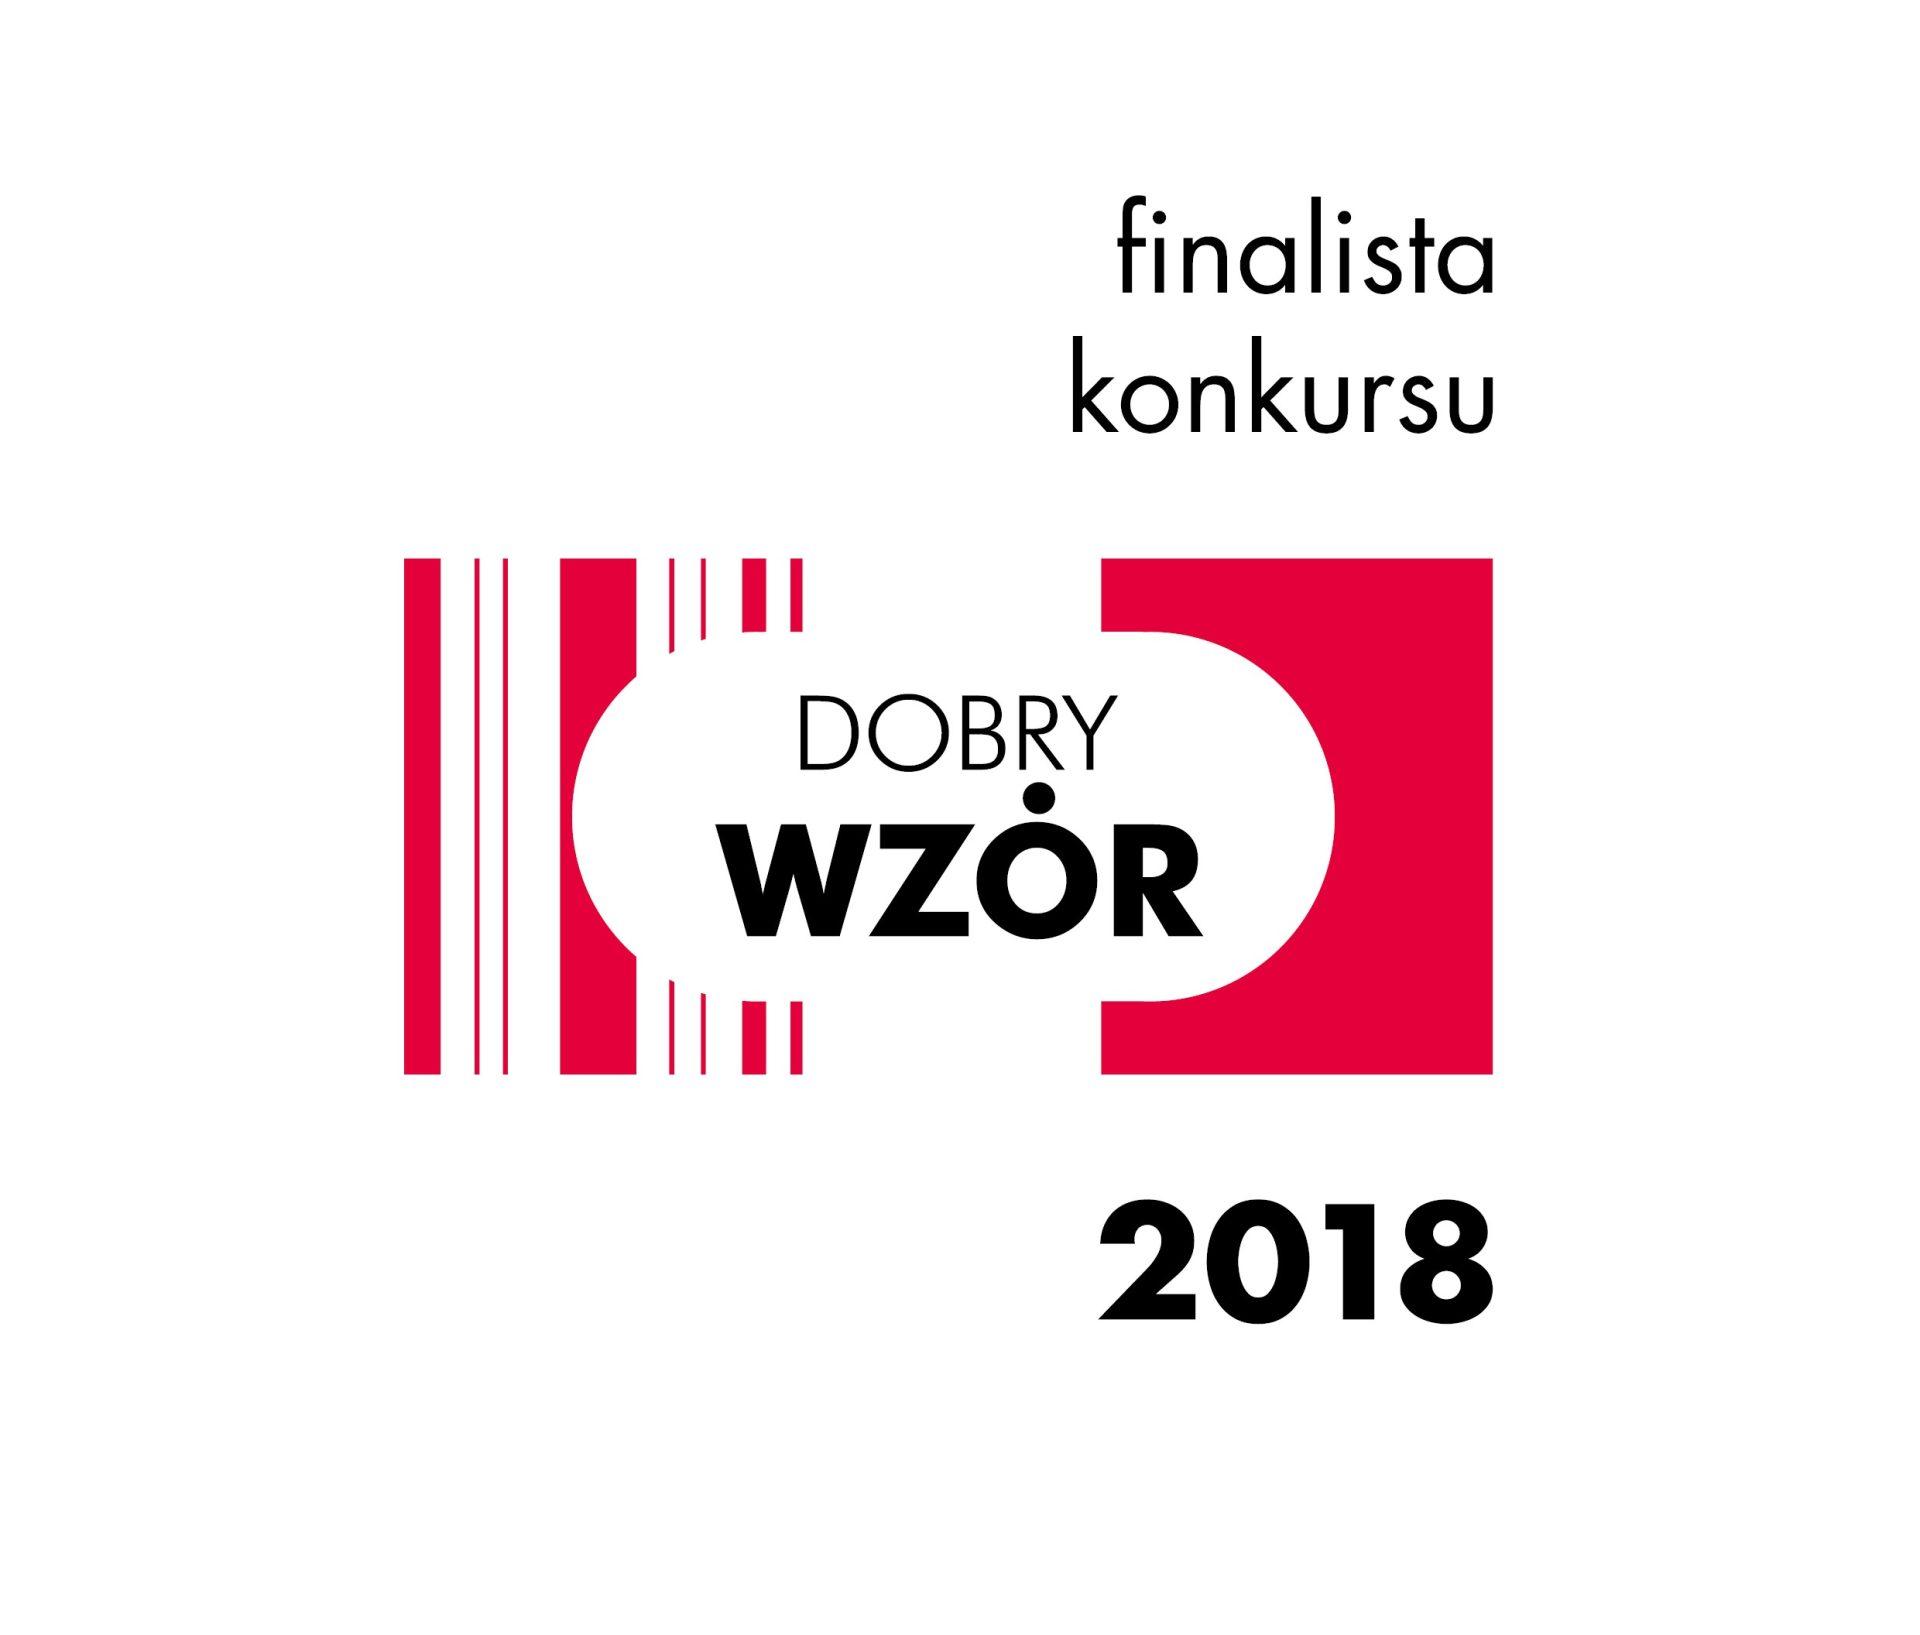 Polski producent gniazdek elektrycznych nagrodzony